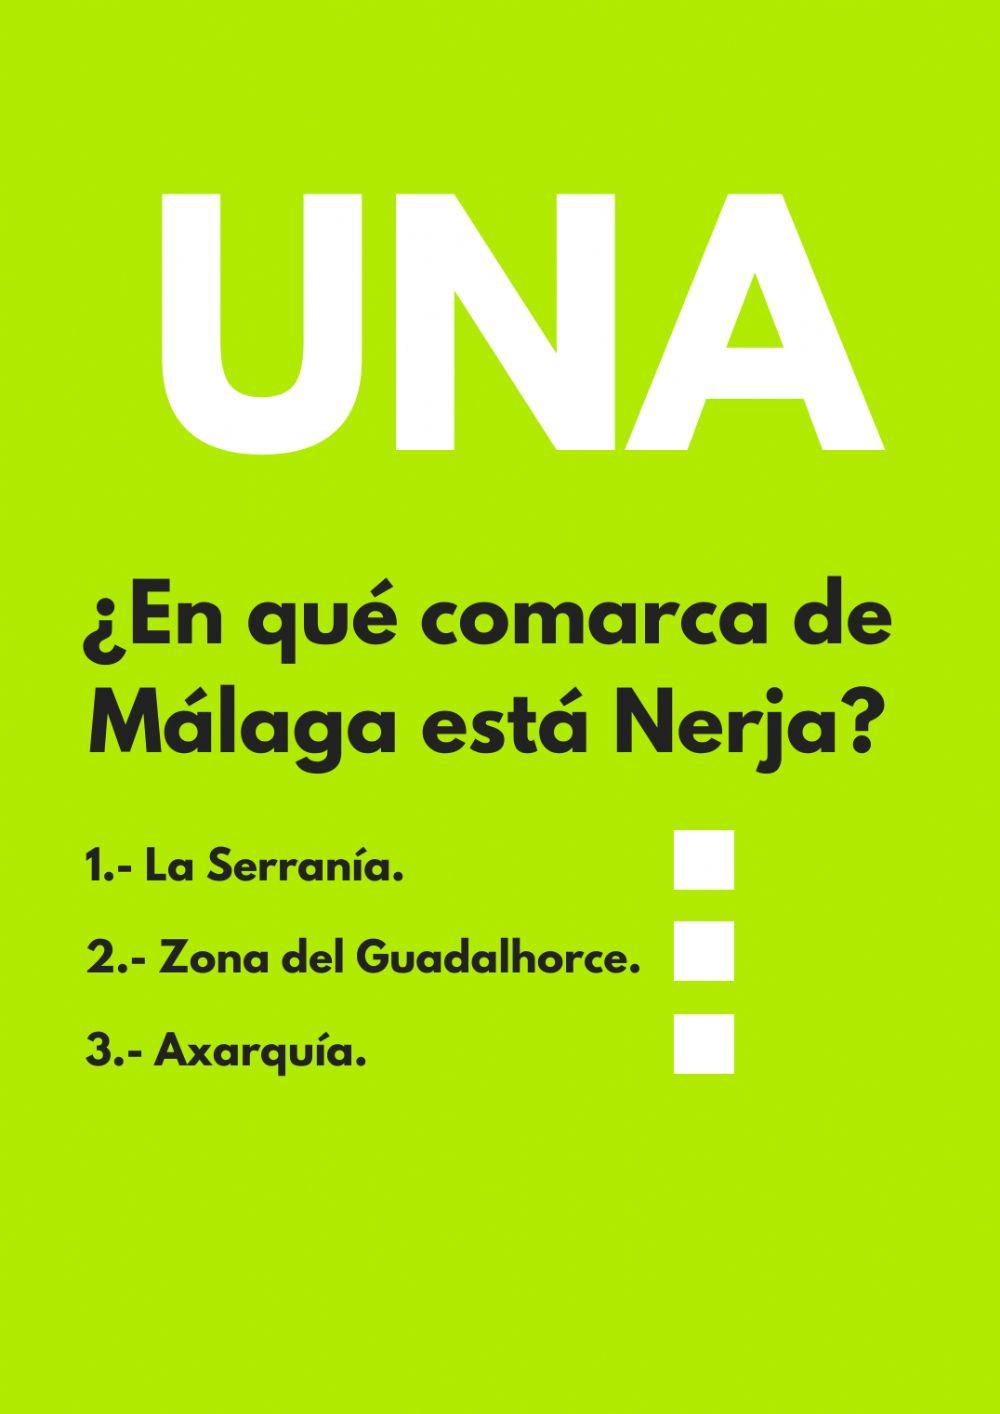 Nerja: Primera pregunta